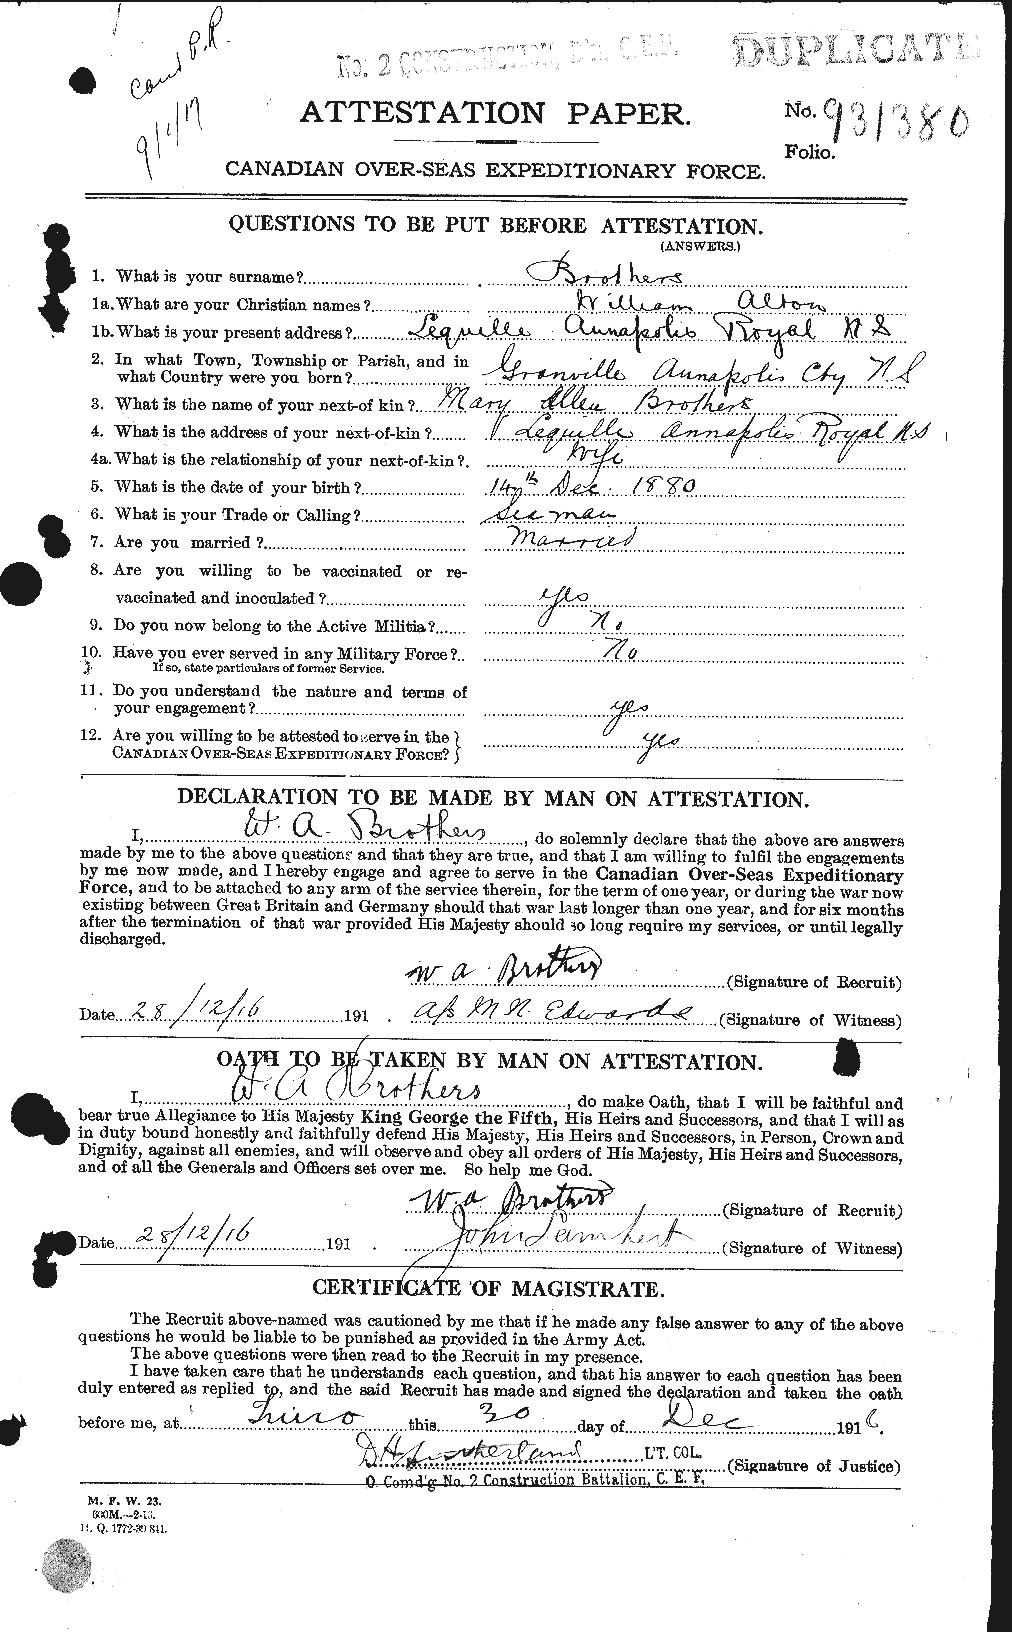 Dossiers du Personnel de la Première Guerre mondiale - CEC 264972a